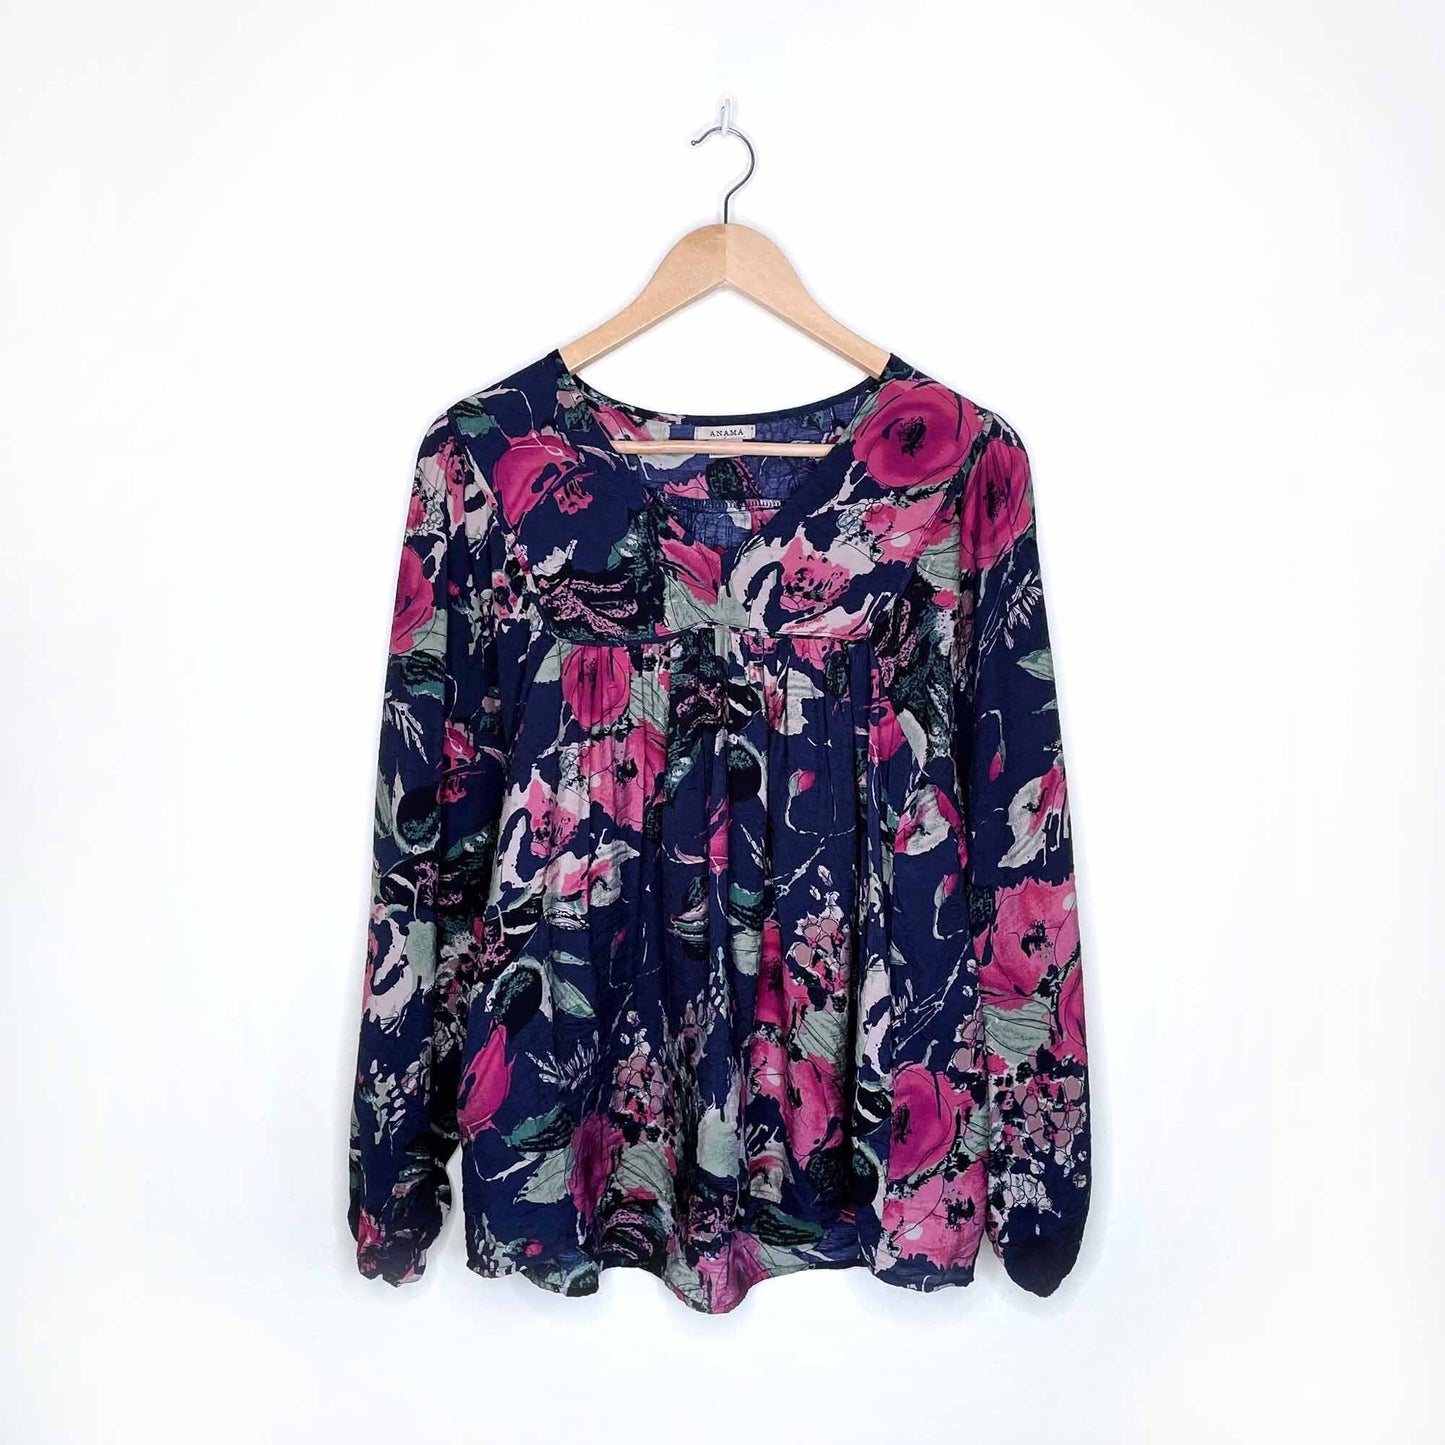 anama floral boho oversized blouse - size xs